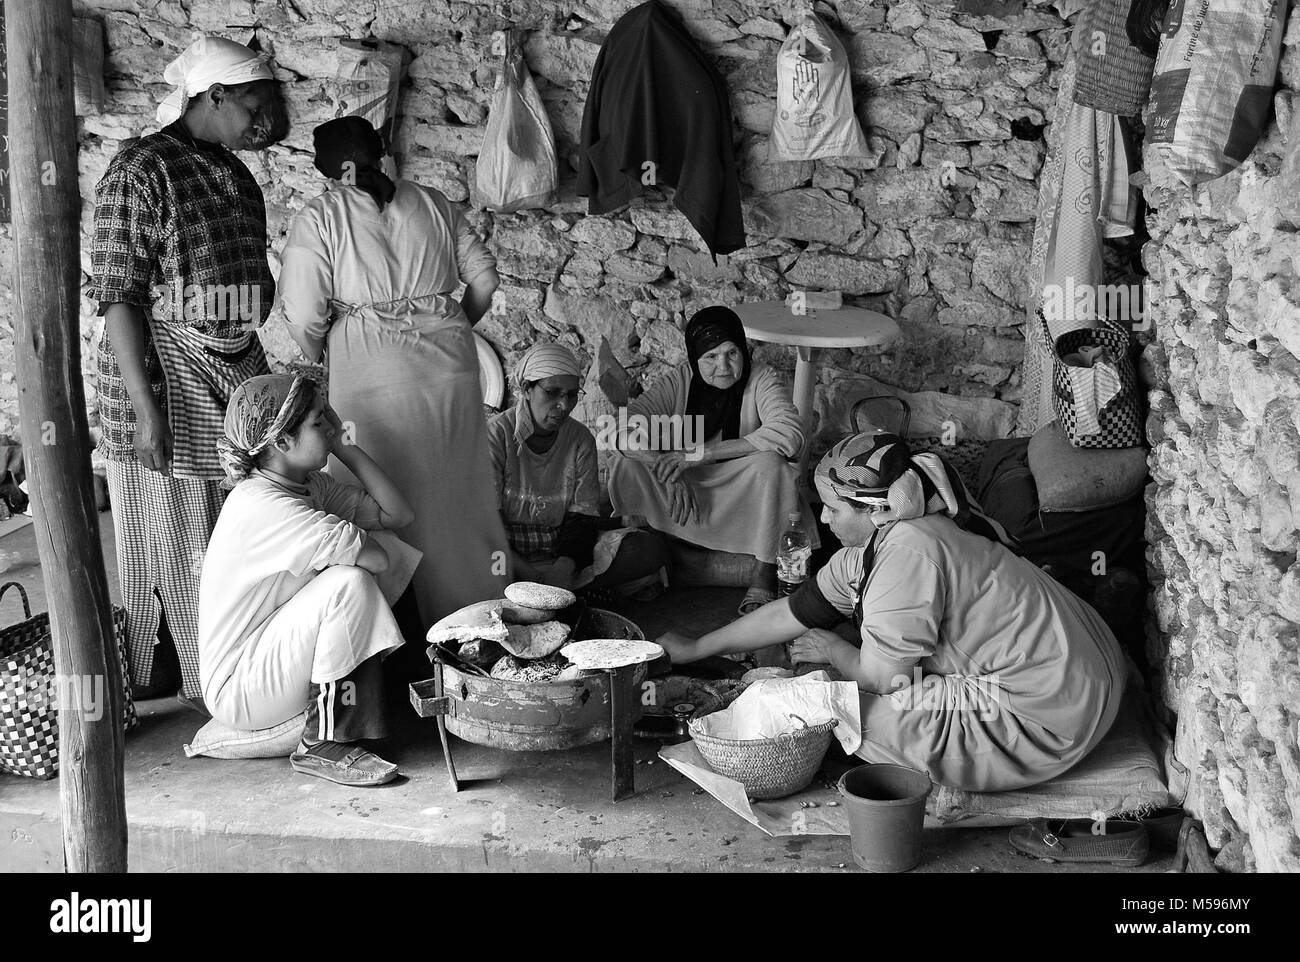 Déjeuner berbère - Maroc Banque D'Images